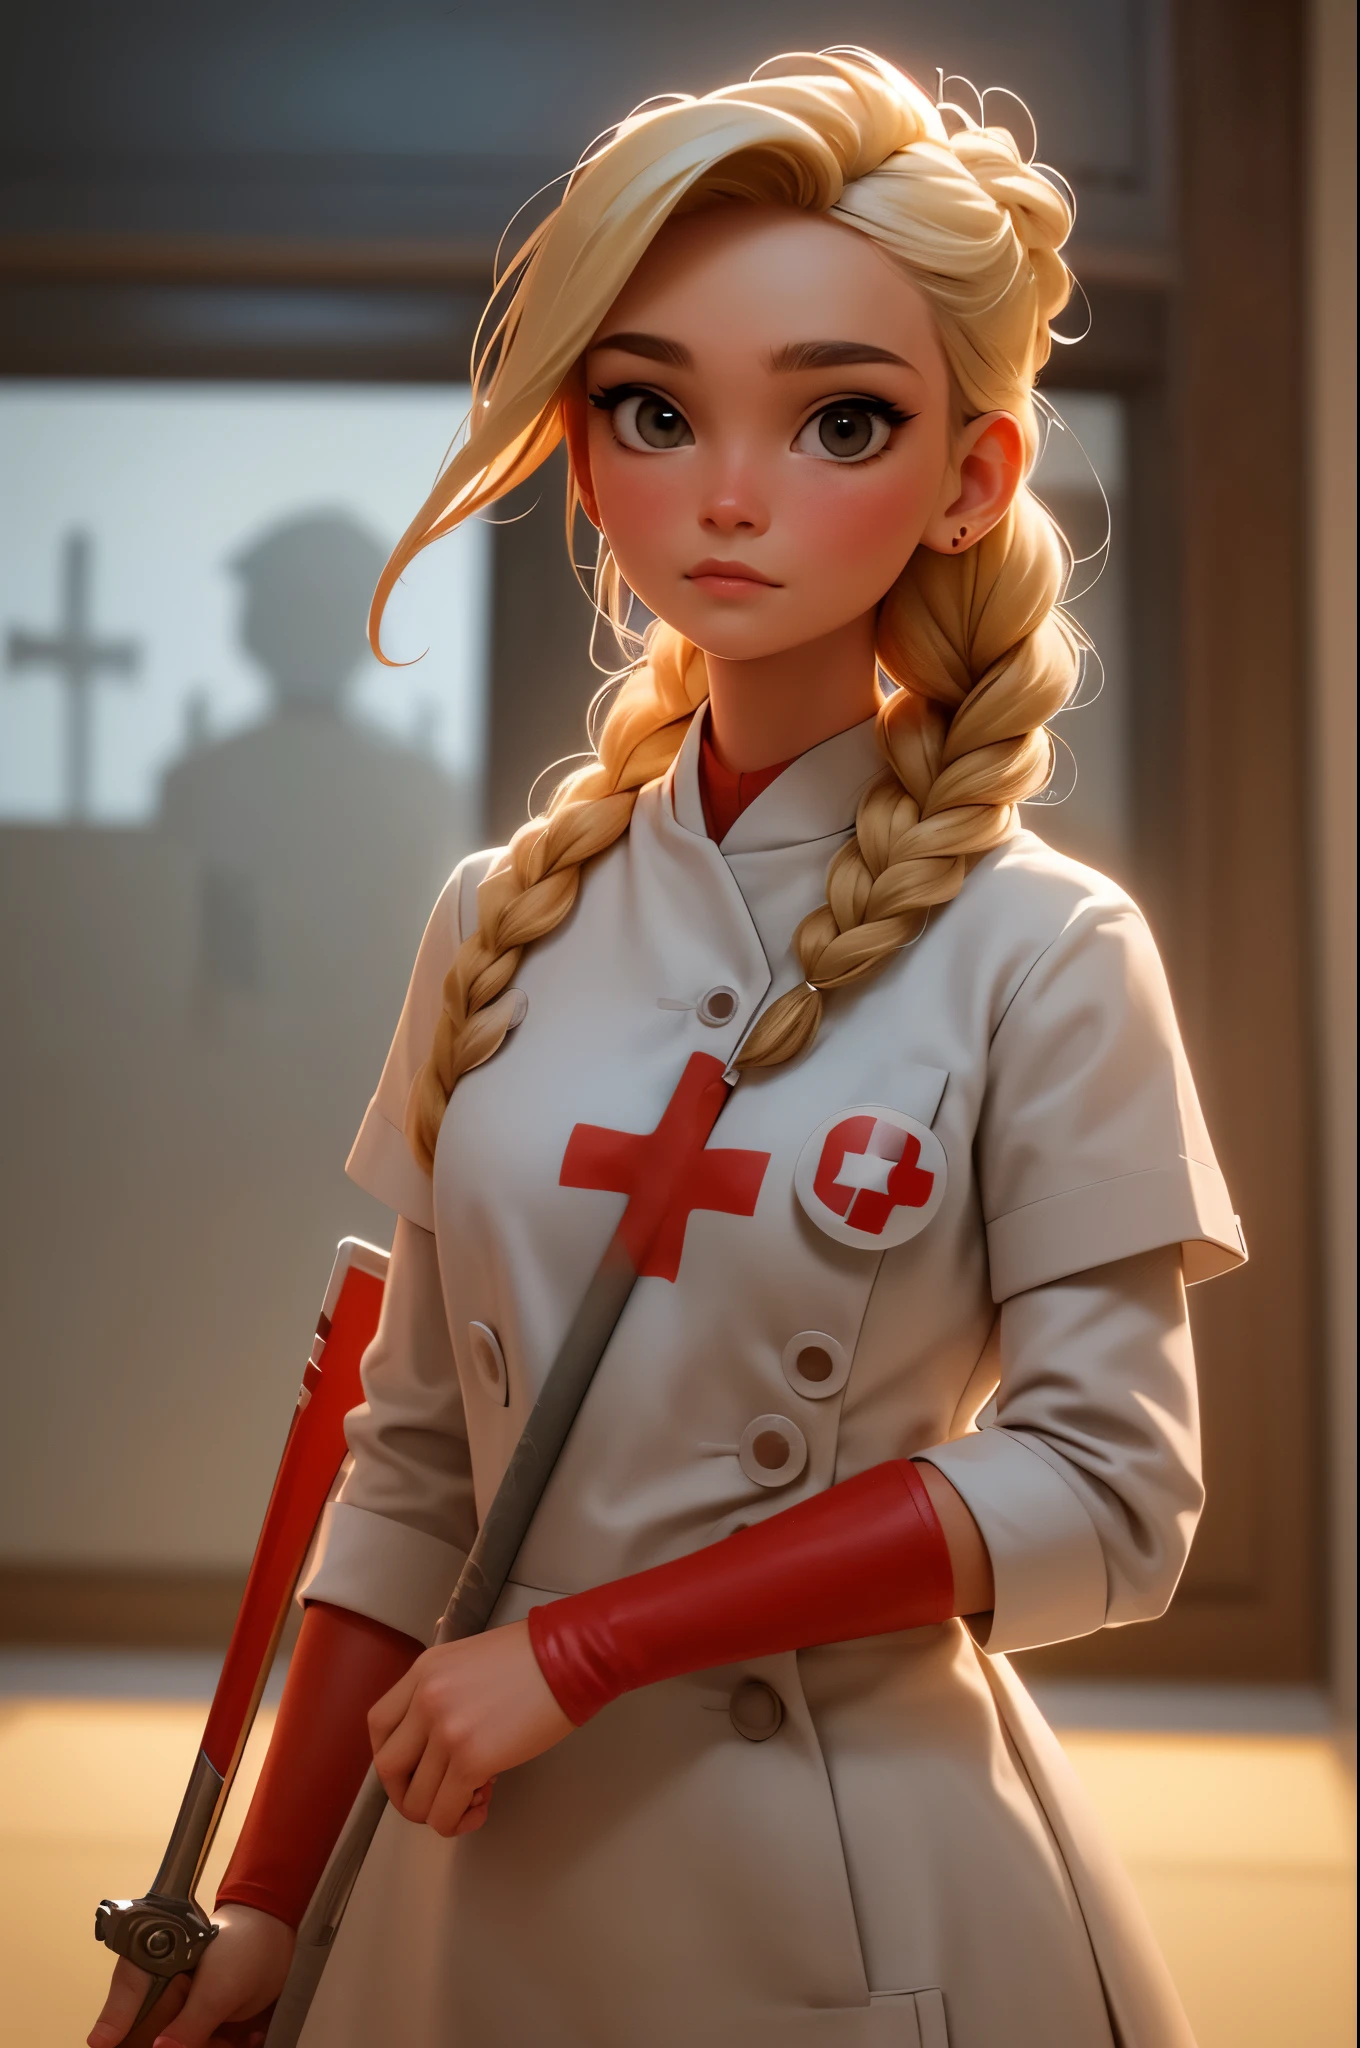 1 garota, Cabelo loiro trançado, Warrior enfermeira with sword on the battlefield, vestido em couro branco brilhante com símbolo da Cruz Vermelha, enfermeira.